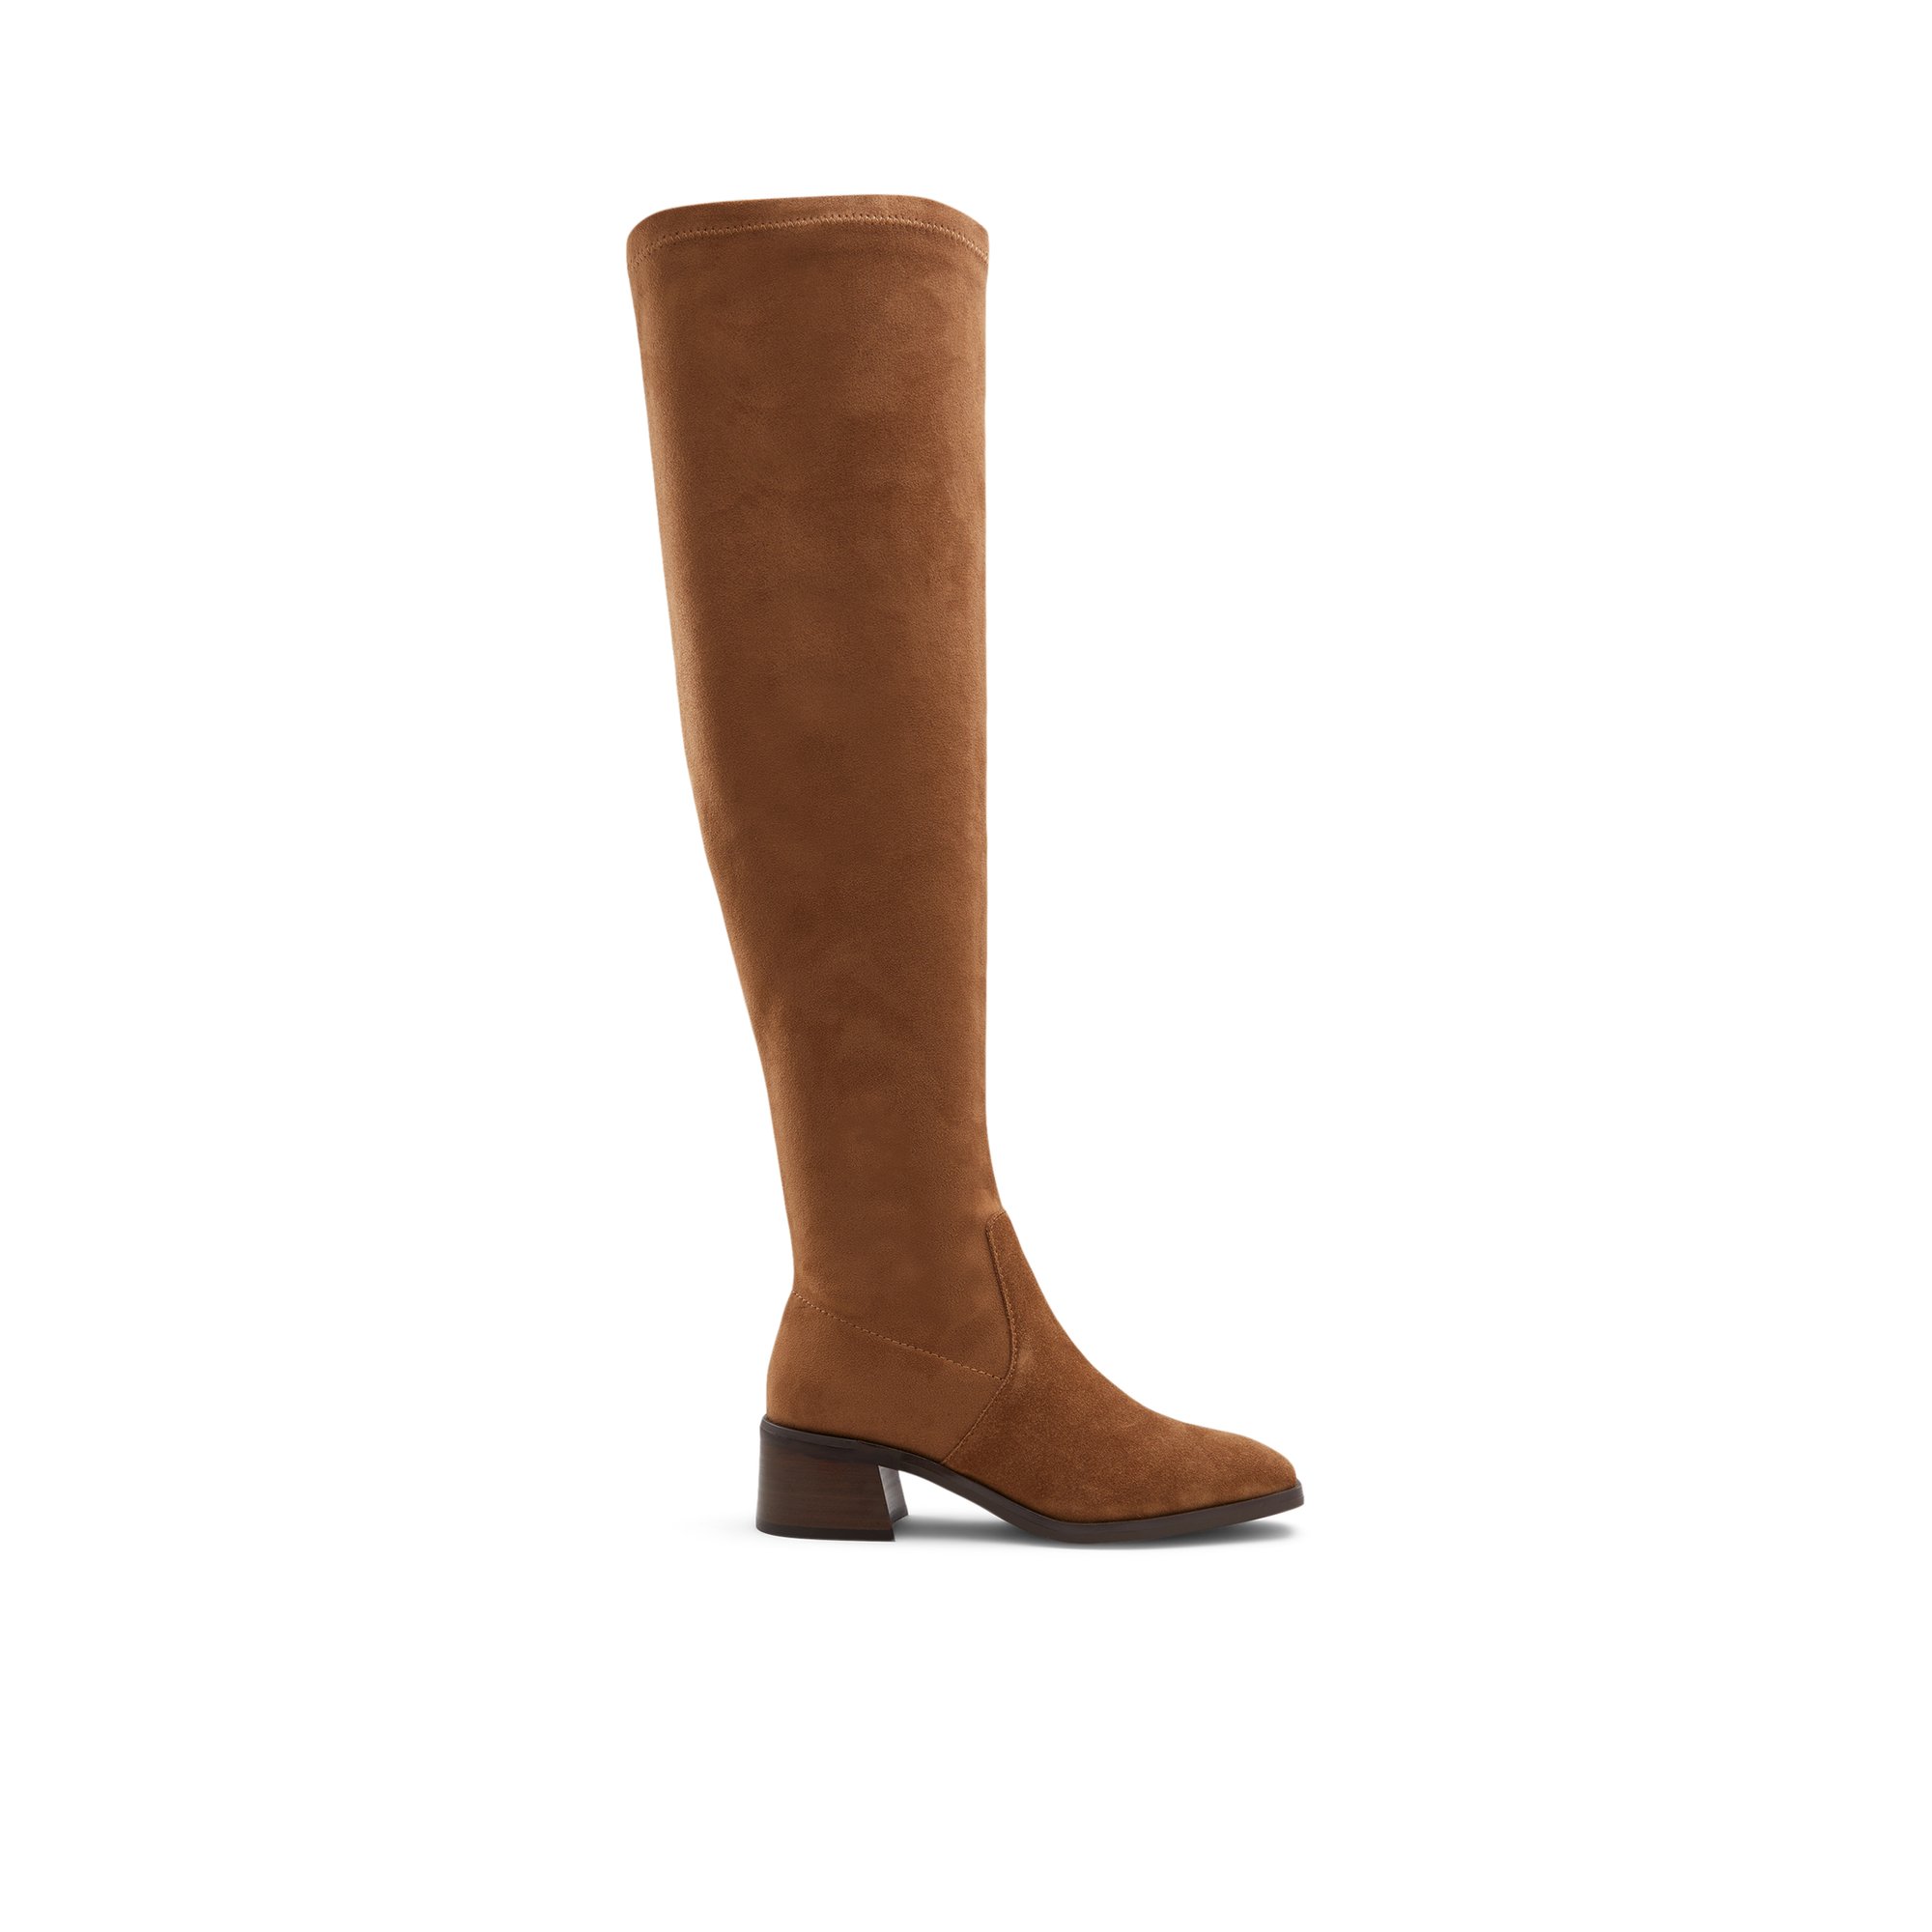 ALDO Miralemas - Women's Boots Tall - Brown